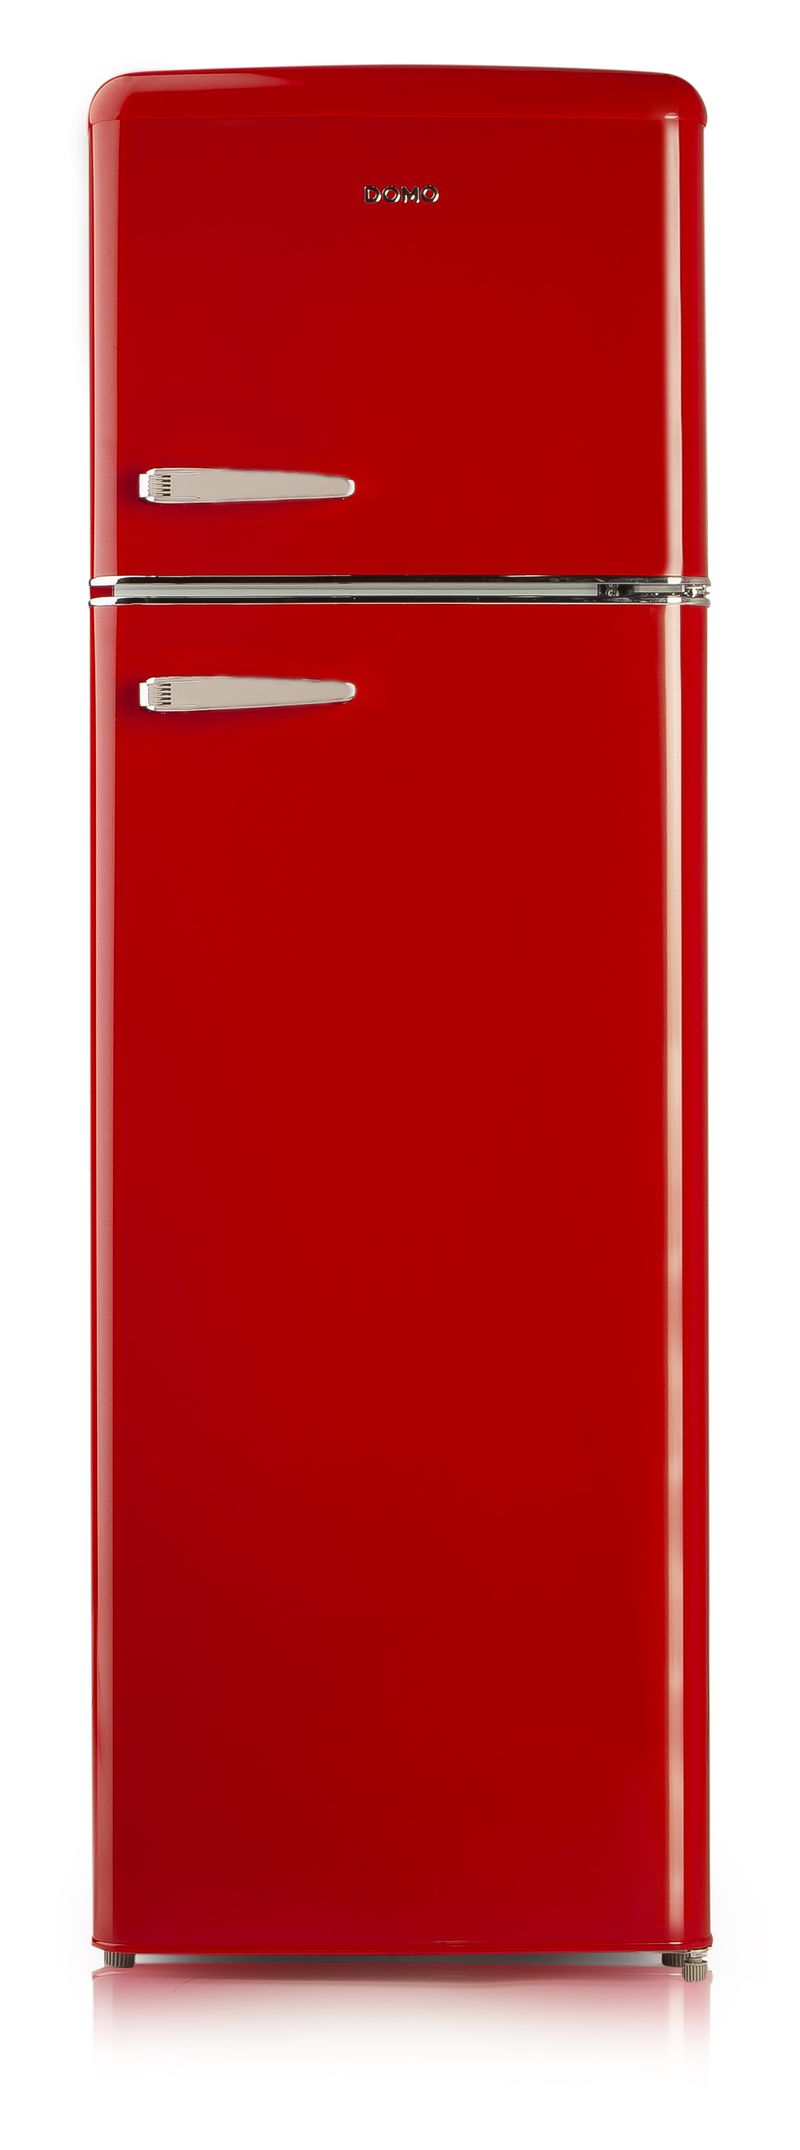 Retro lednice s mrazákem nahoře - červená - DOMO DO929RKR